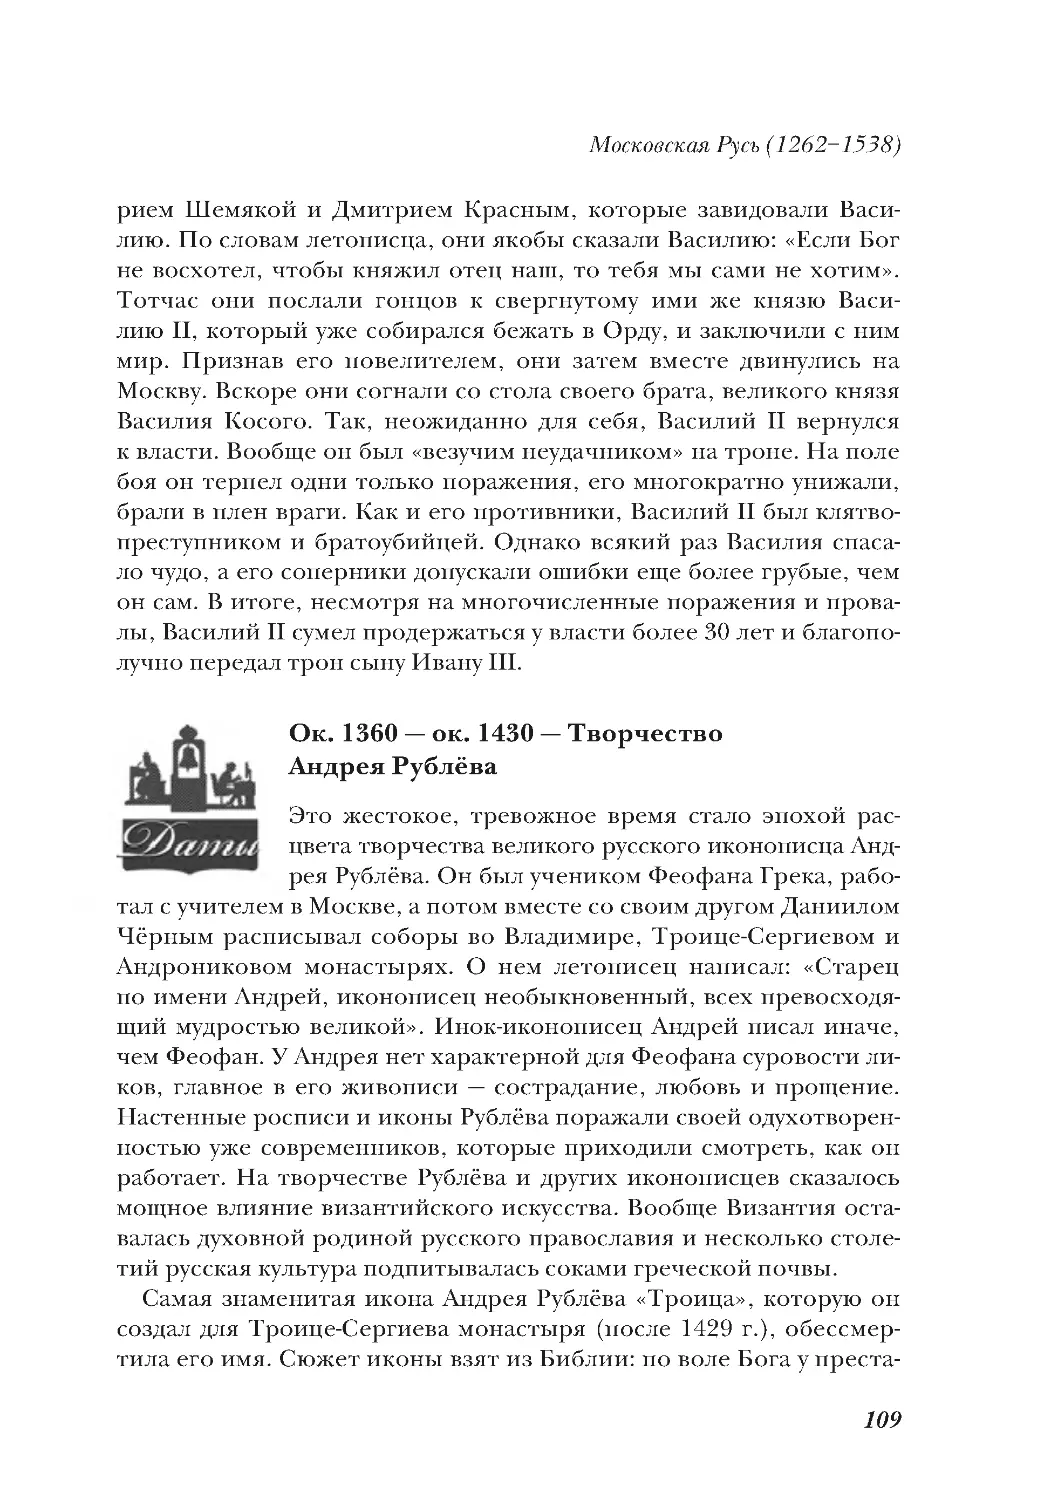 Ок. 1360 — ок. 1430 — Творчество Андрея Рублёва